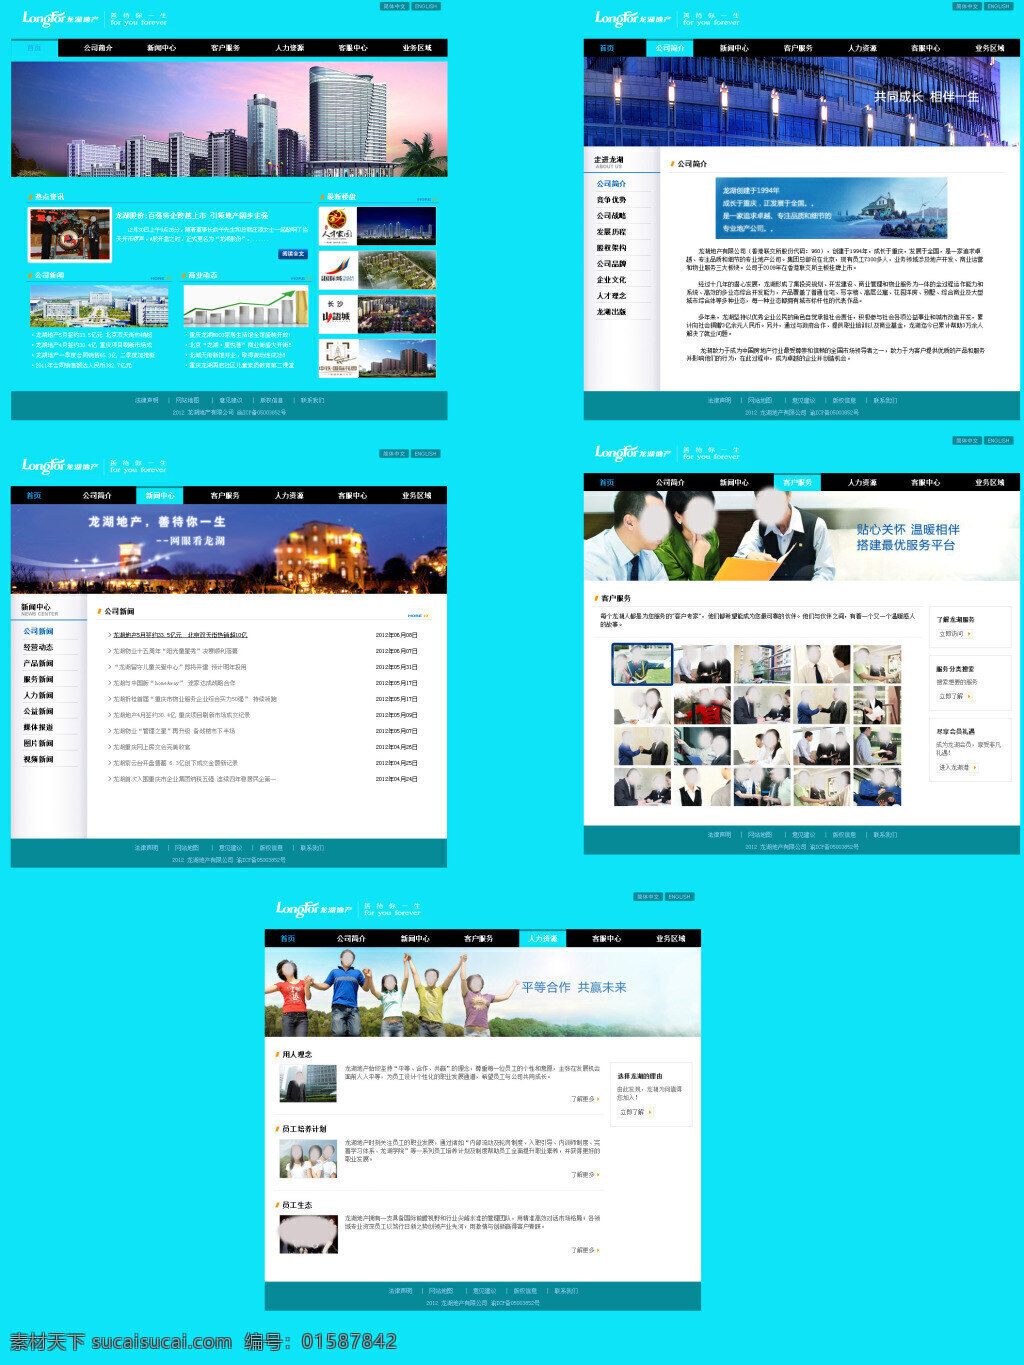 龙湖 地产 企业 站 网站 系列 龙湖地产 企业站 网站设计 青色 天蓝色